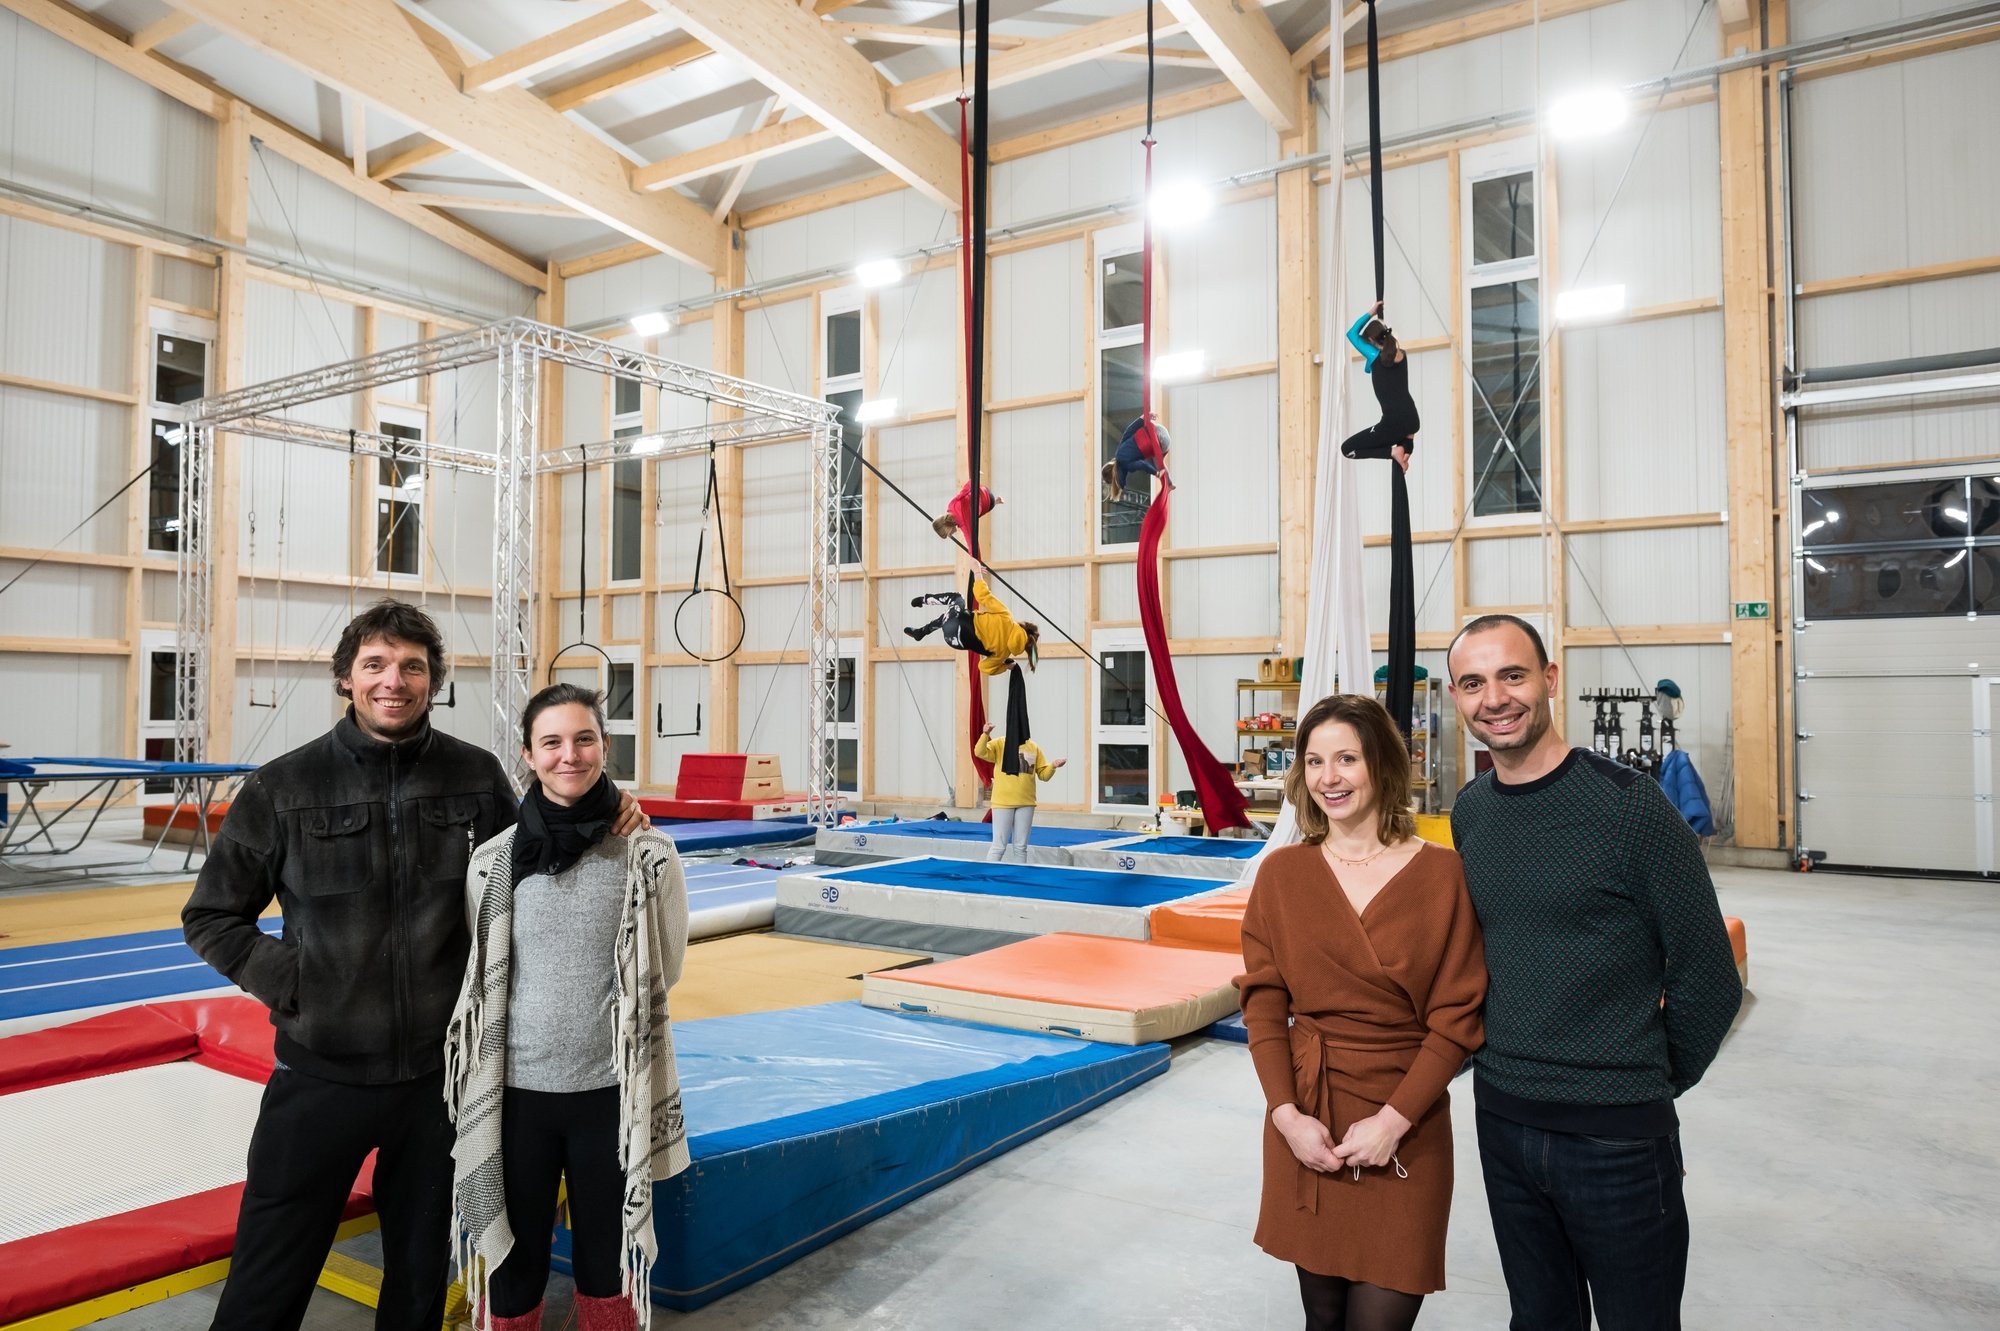 L'école de cirque et de trapèze volant est gérée par François Noël, trapéziste, et Yann Burgat, gérant du manège de Colombier, ainsi que leurs épouses respectives.